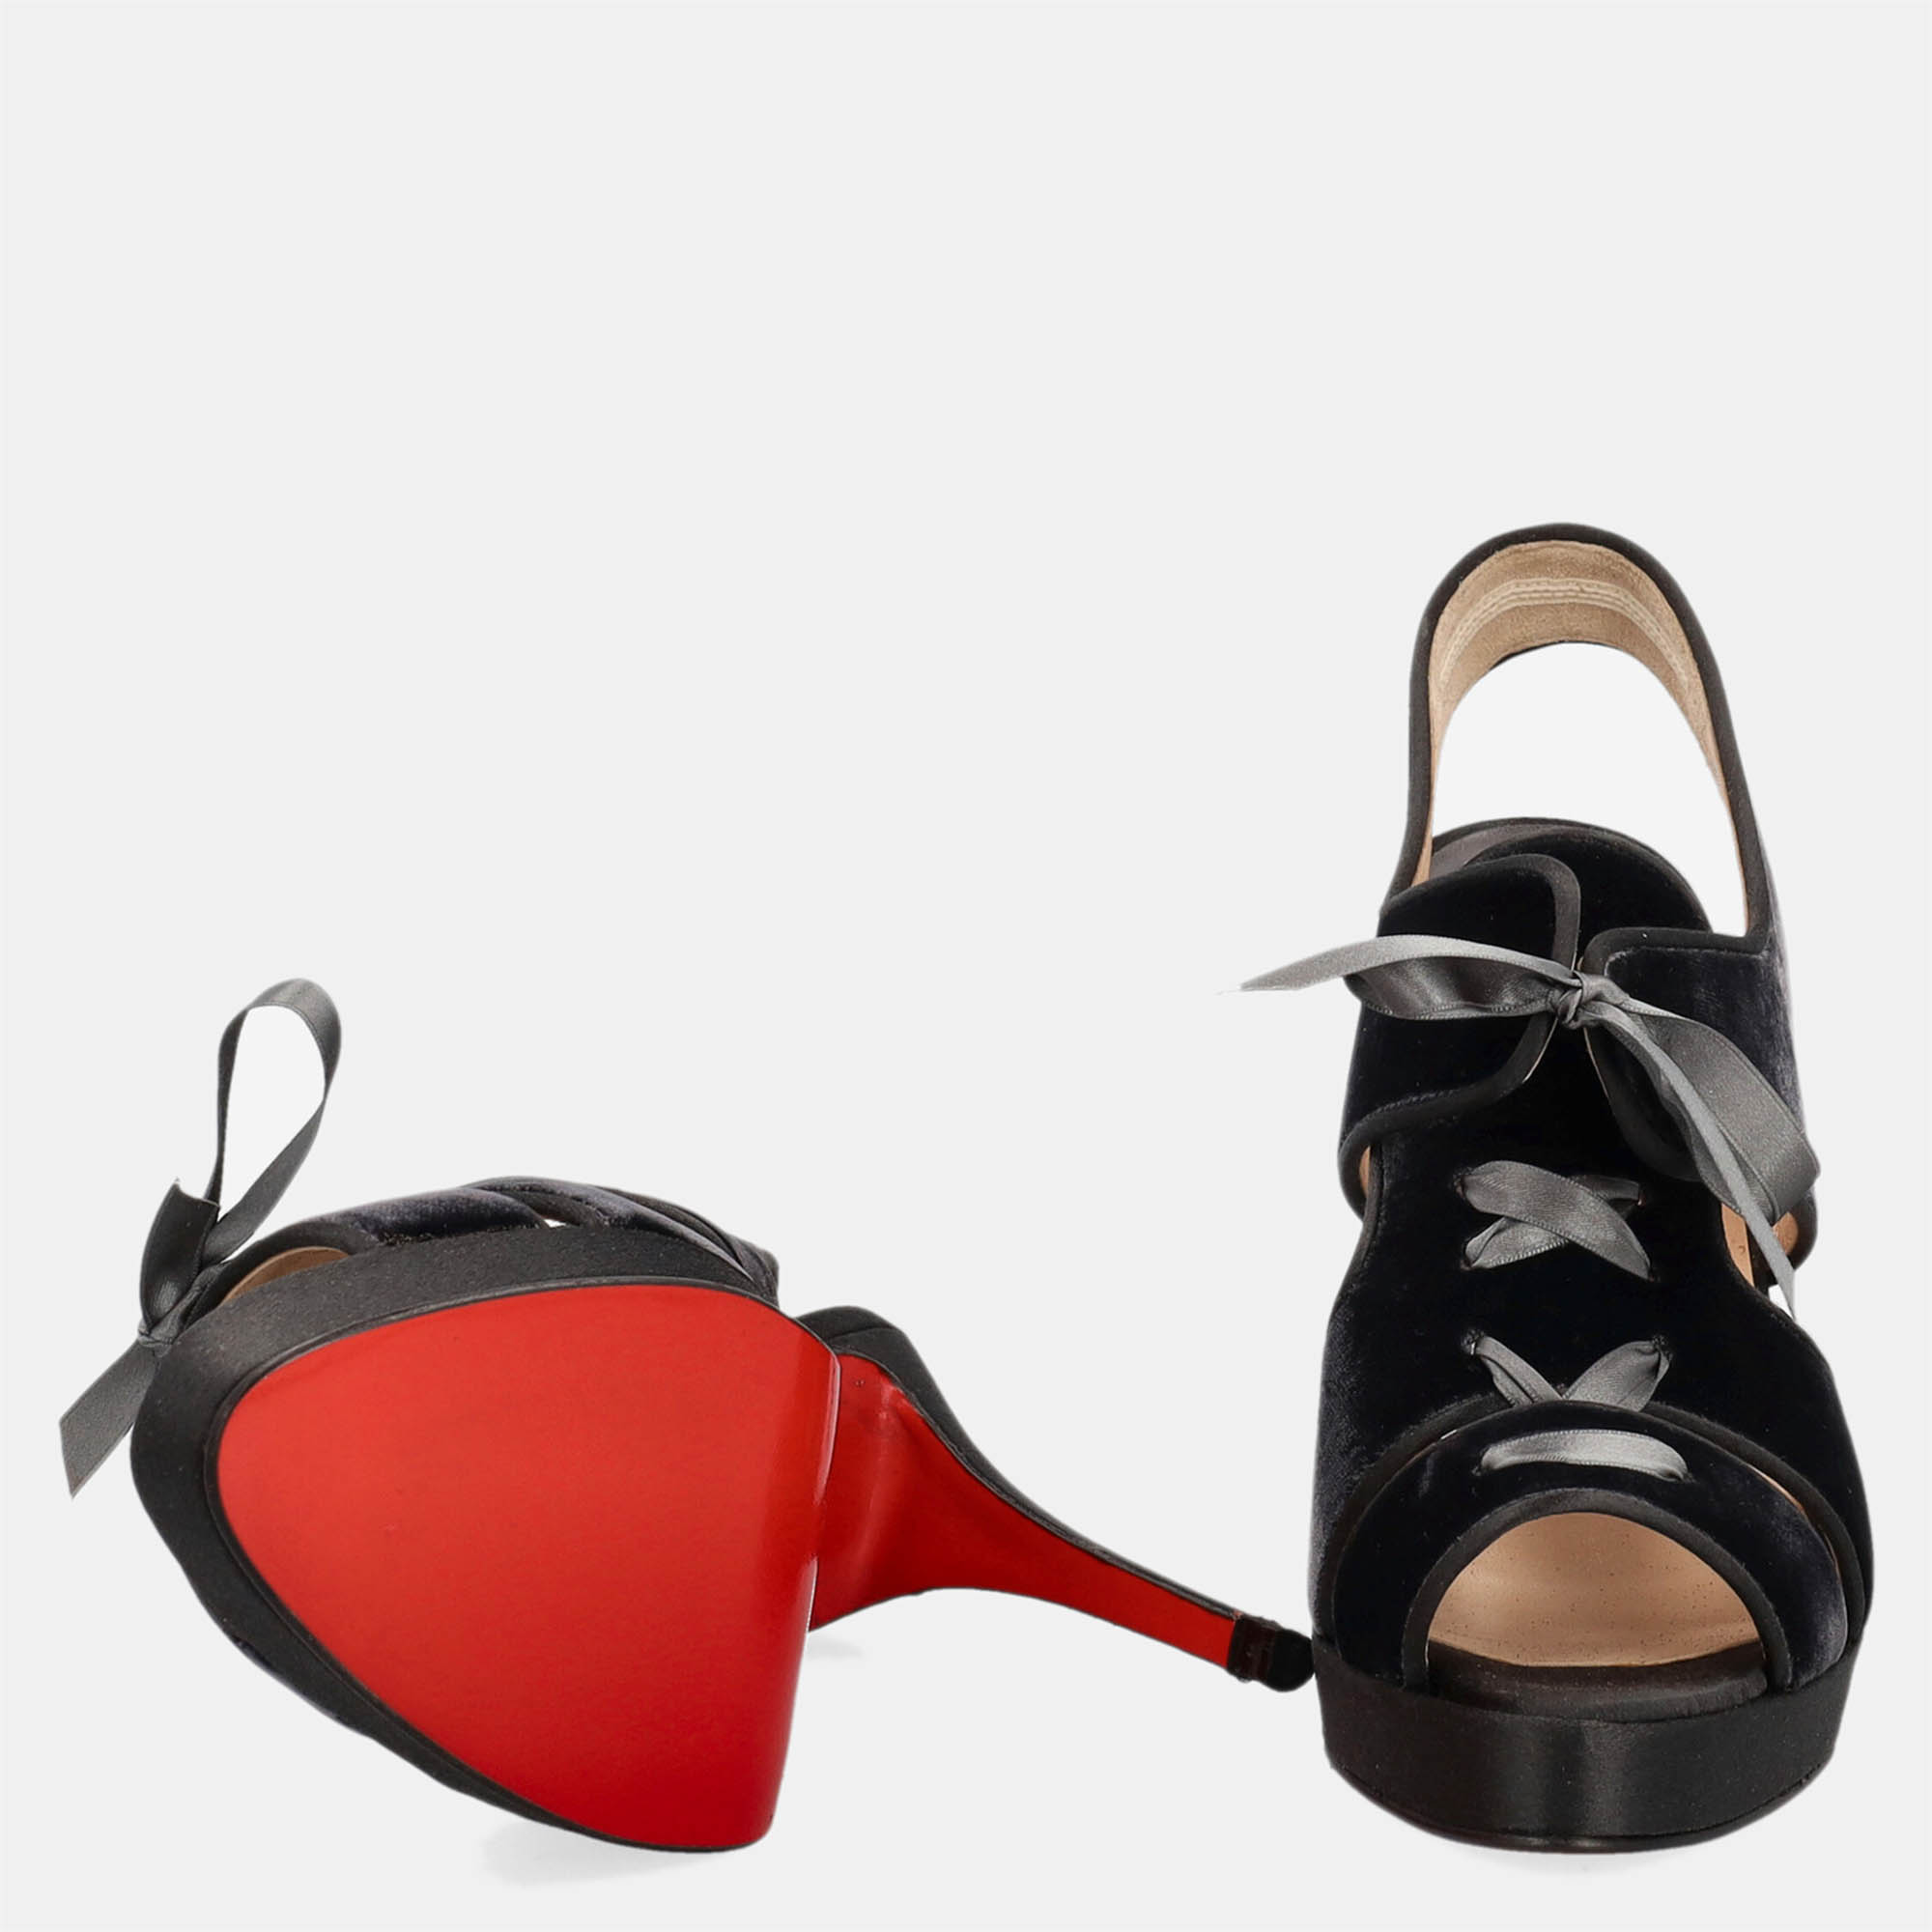 Christian Louboutin  Women's Fabric Sandals - Black - EU 37